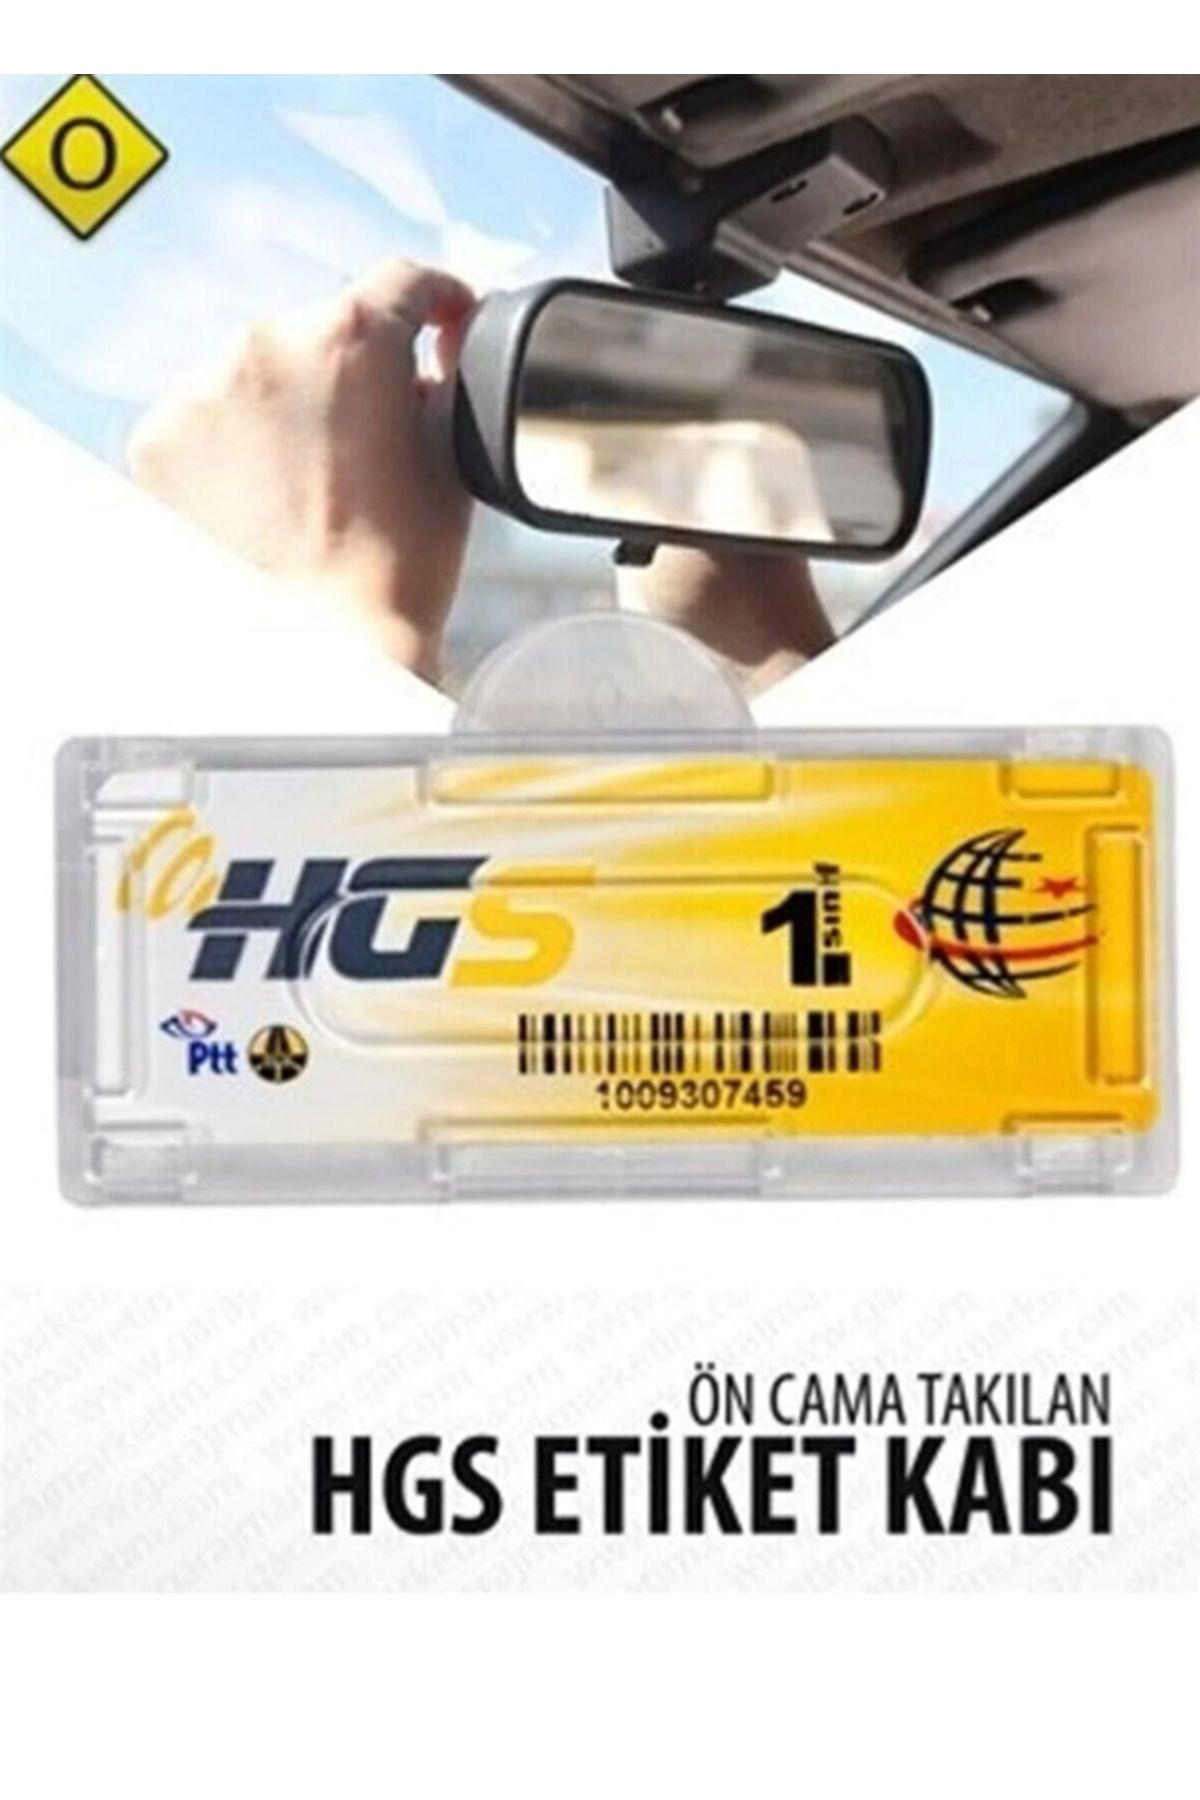 HMNL HGS ETİKET KABI